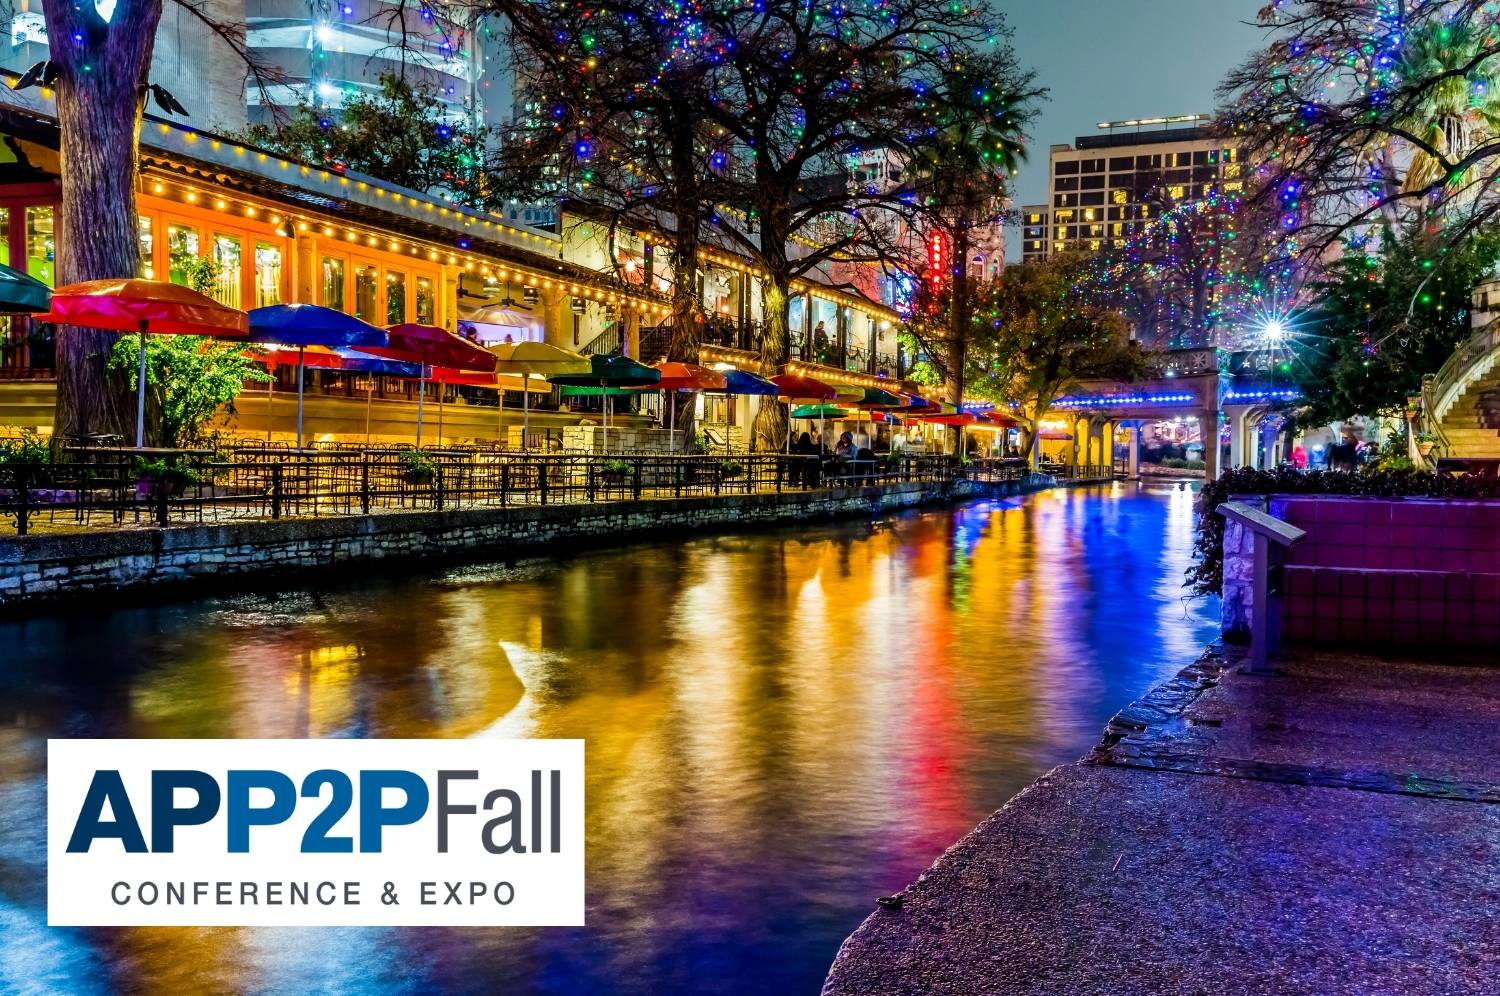 APP2P Fall Conference in San Antonio, Texas